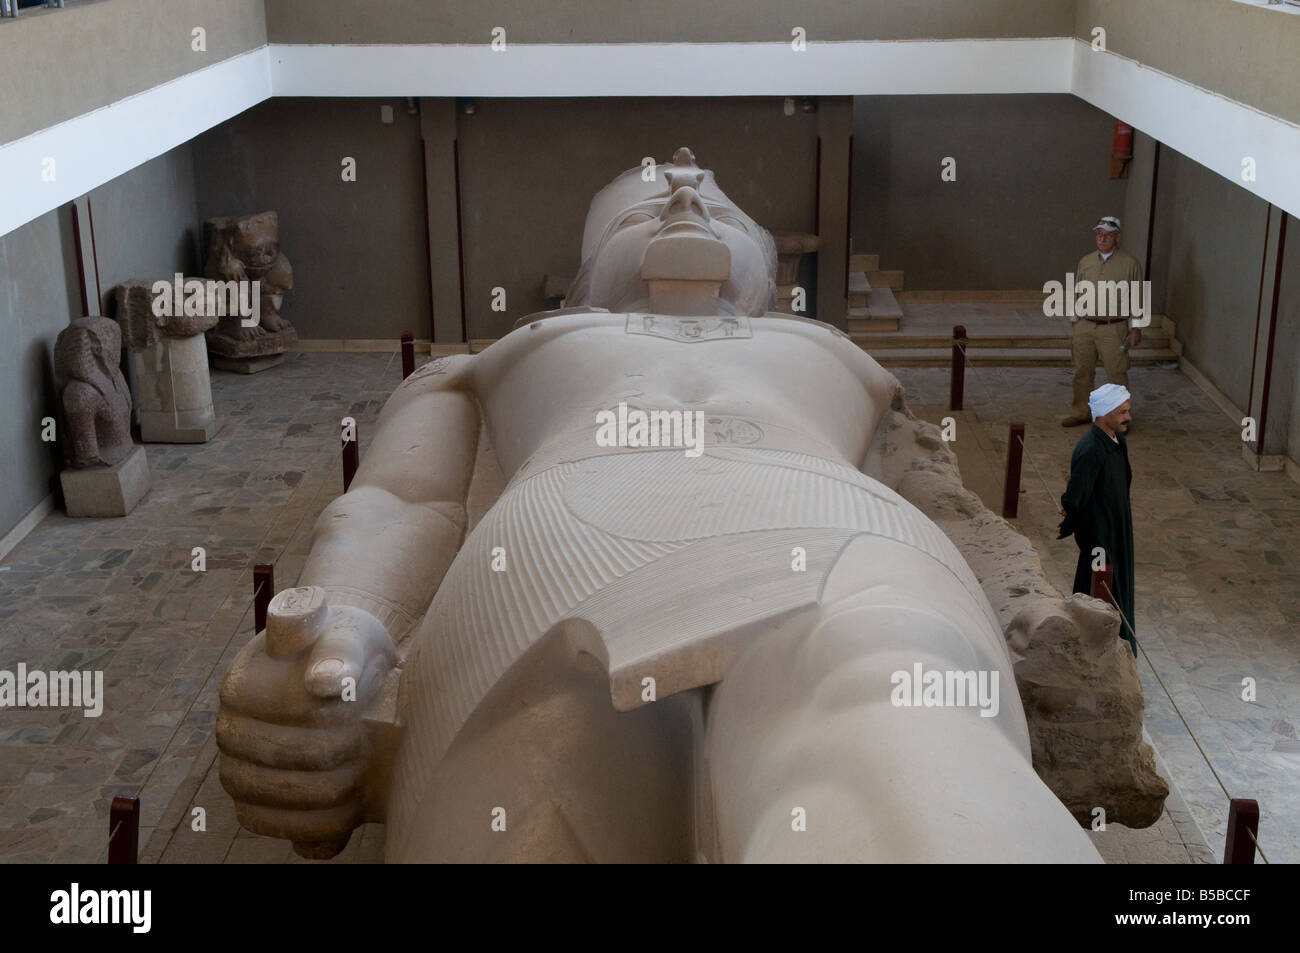 La gigantesque statue en pierre calcaire sculpté de Ramsès II dans le musée en plein air à Memphis, l'ancienne capitale de l'Aneb-Hetch, le premier nome de Basse Égypte Banque D'Images